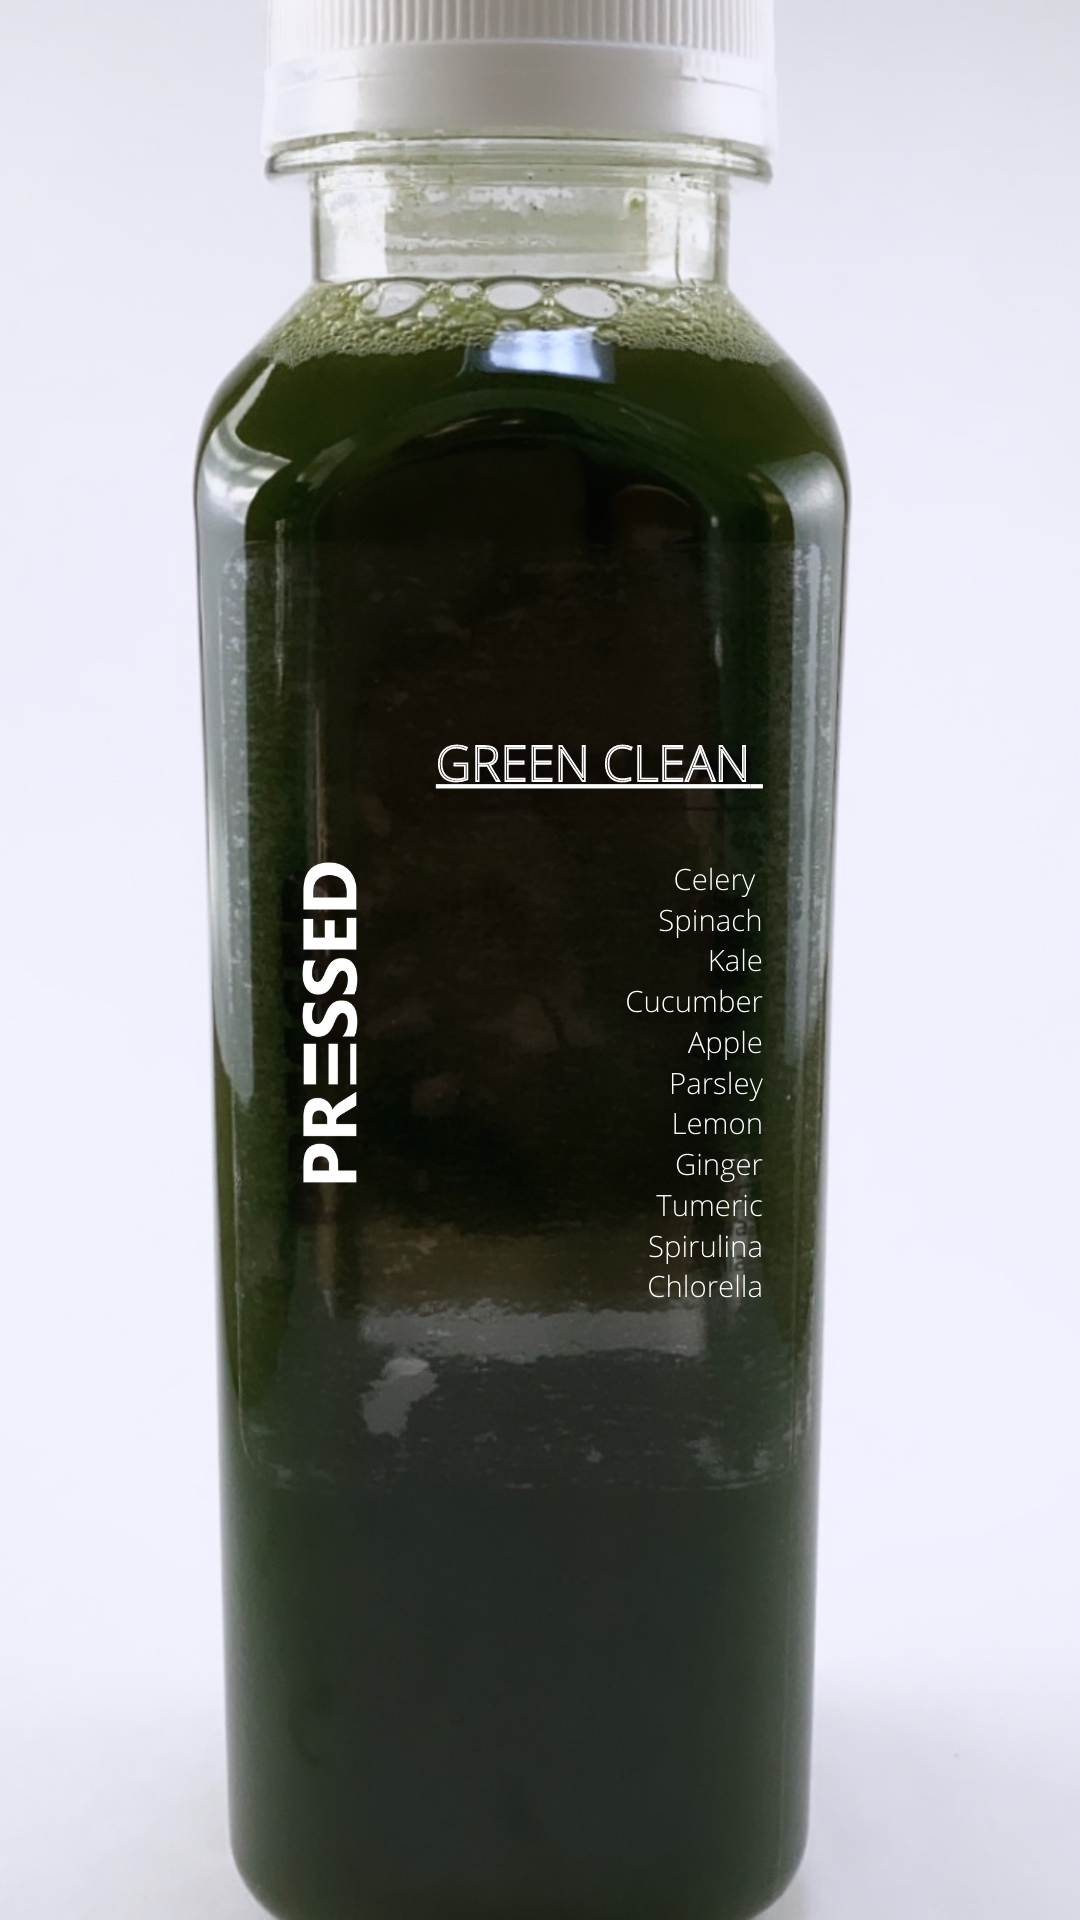 Green Clean